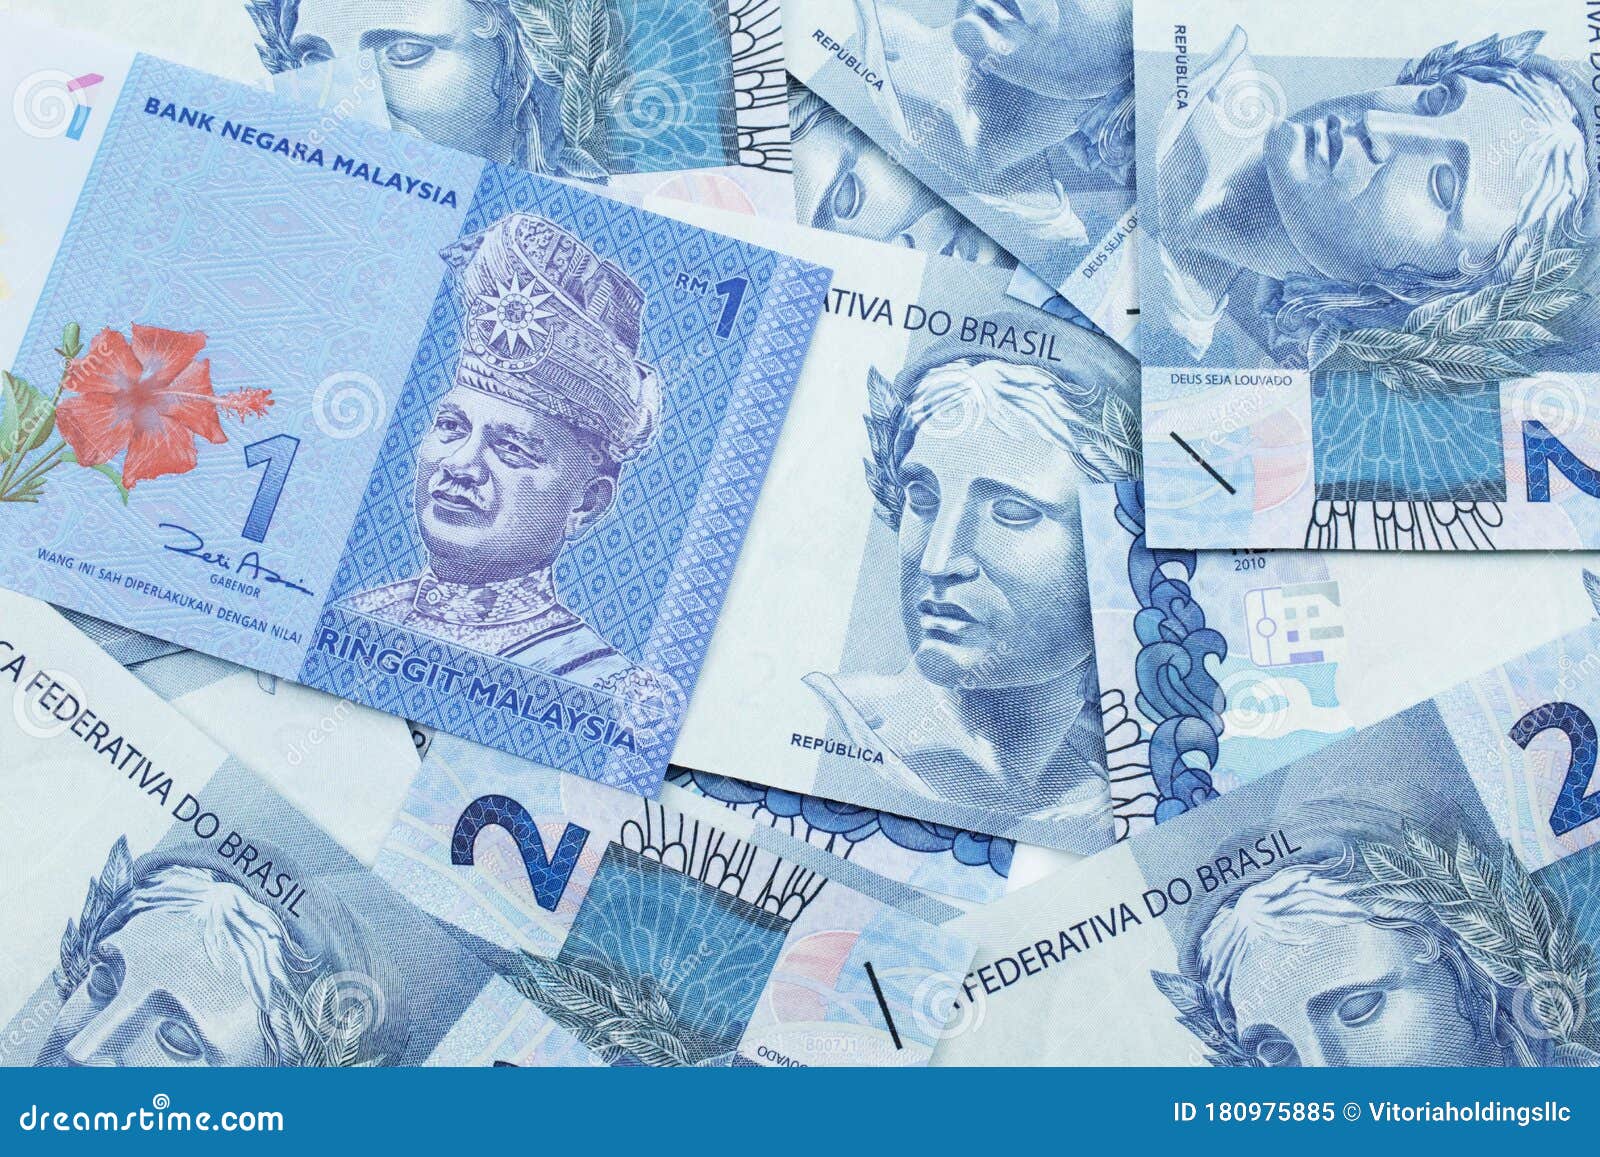 Синяя купюра. Синие купюры. Купюры синего цвета. В какой стране синие купюры. Красивые шаблоны банкнот голубой.